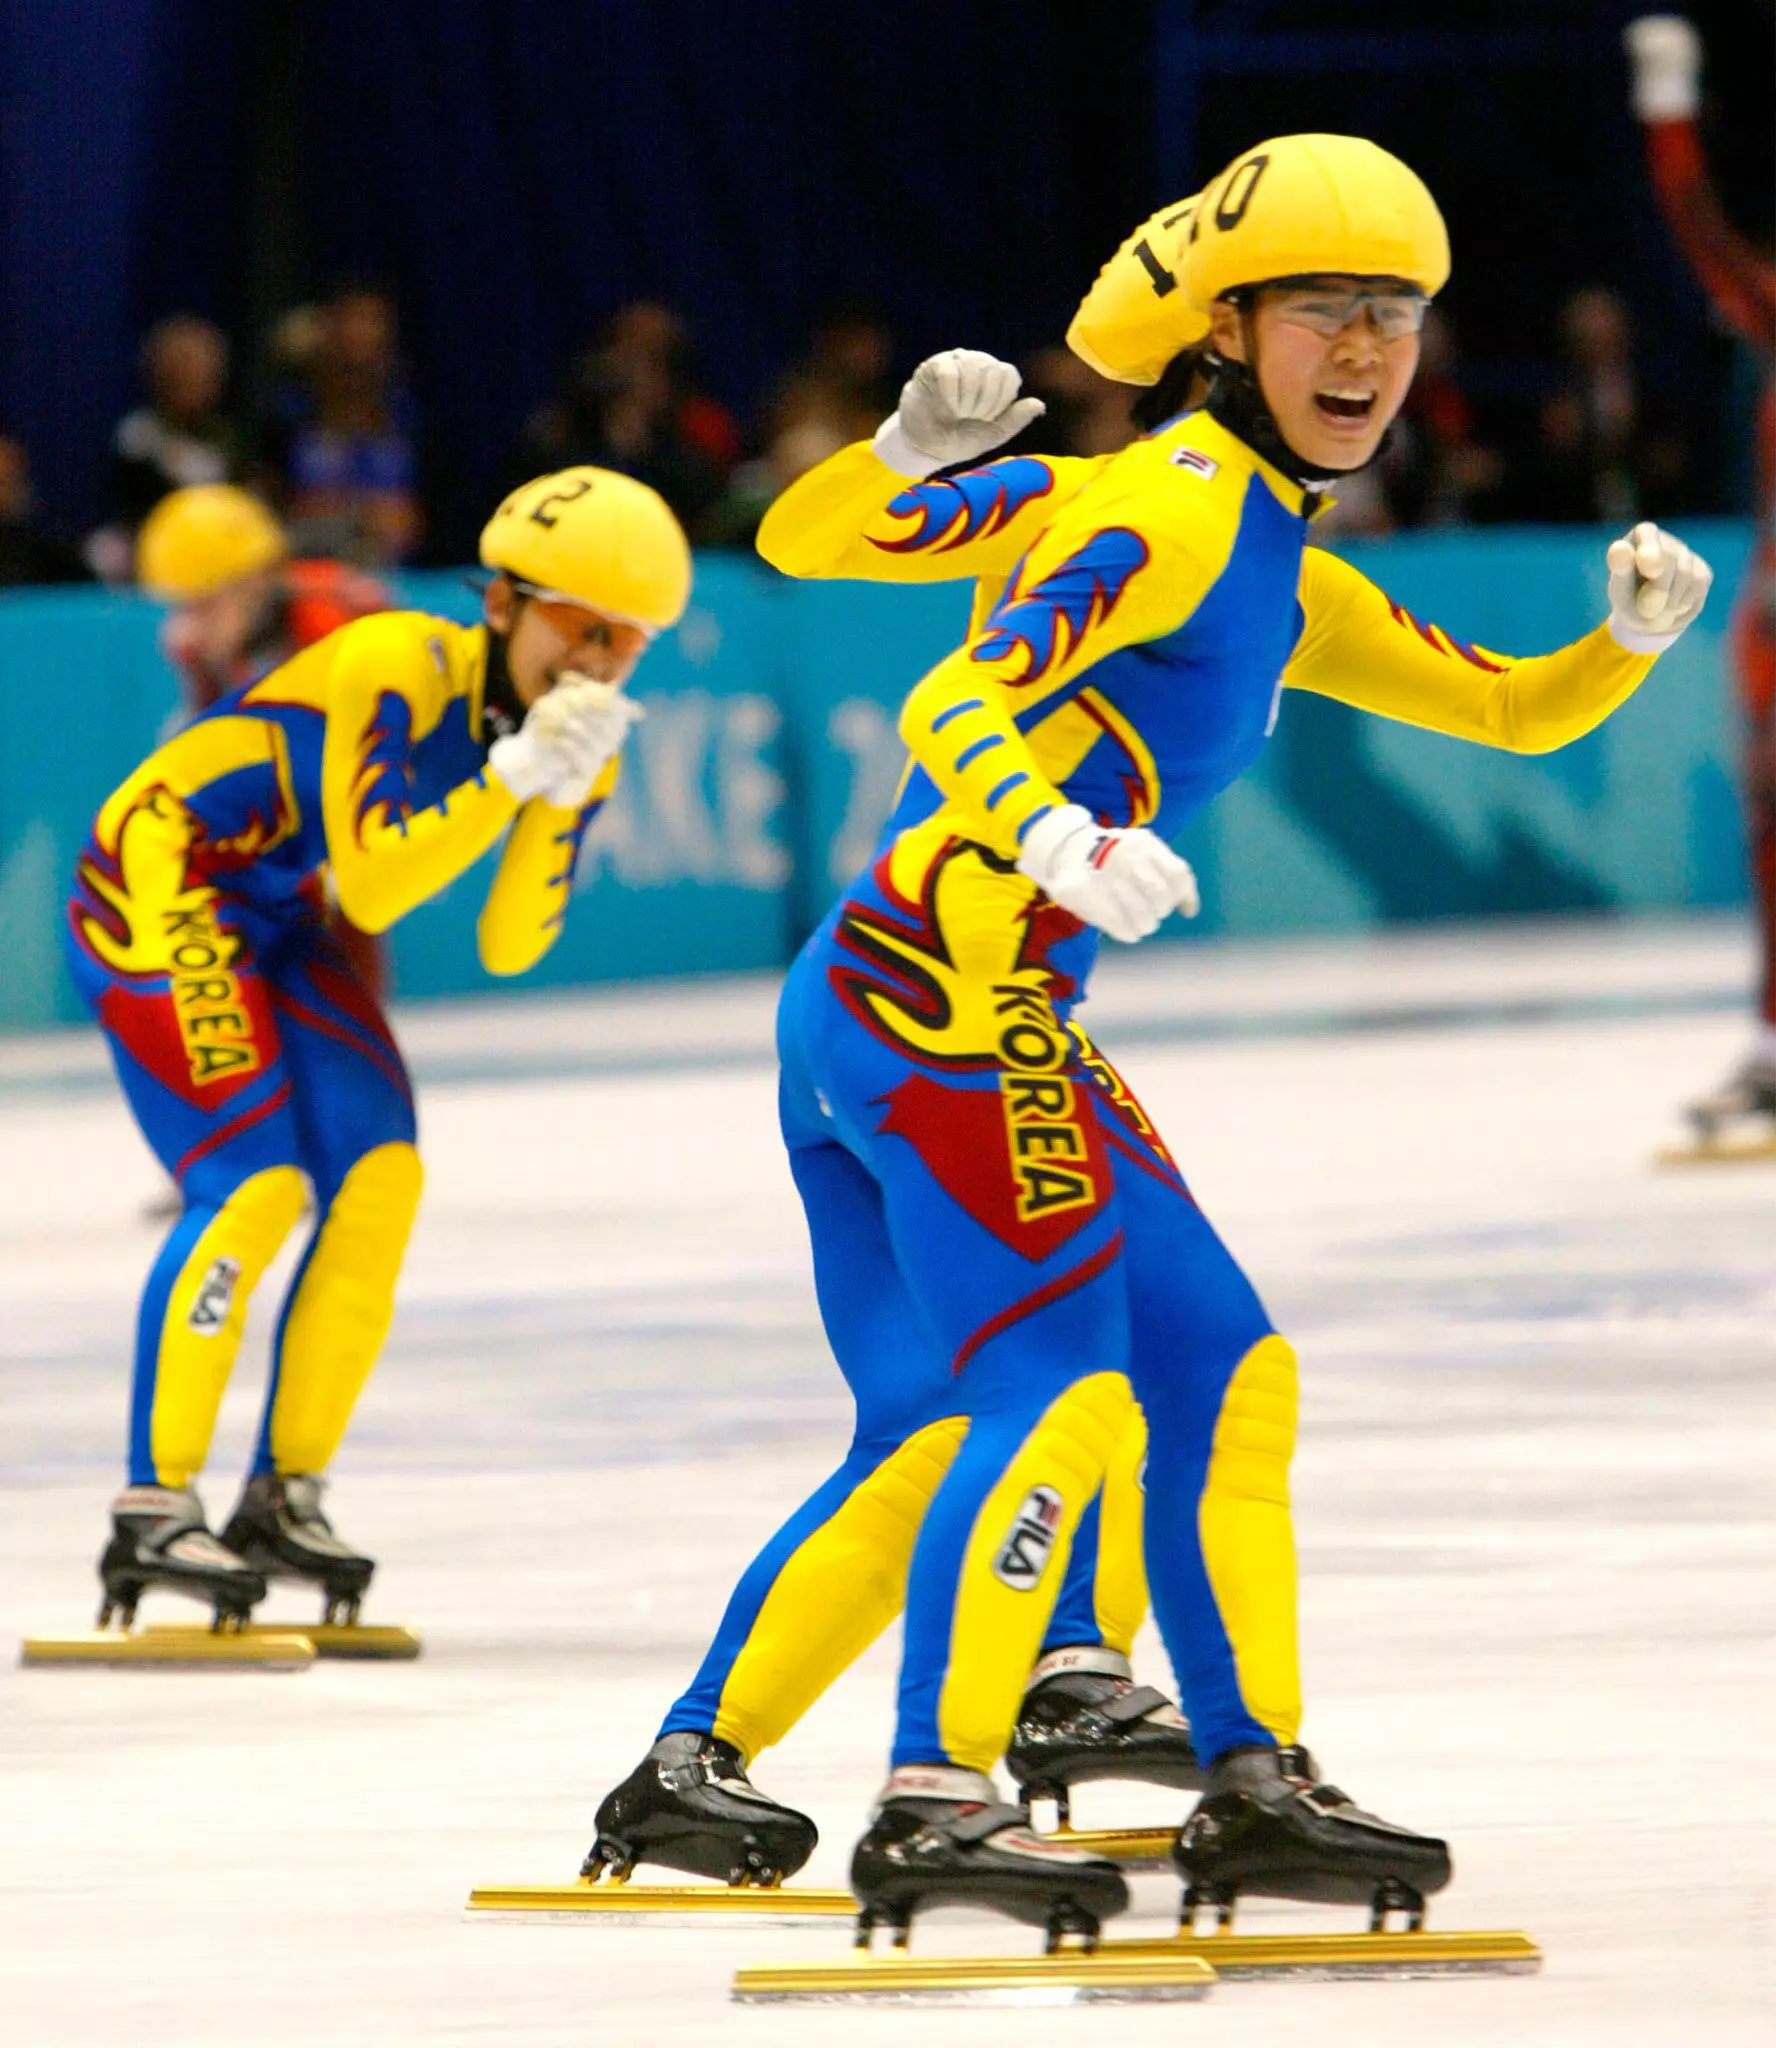 Korea's speed skating team.